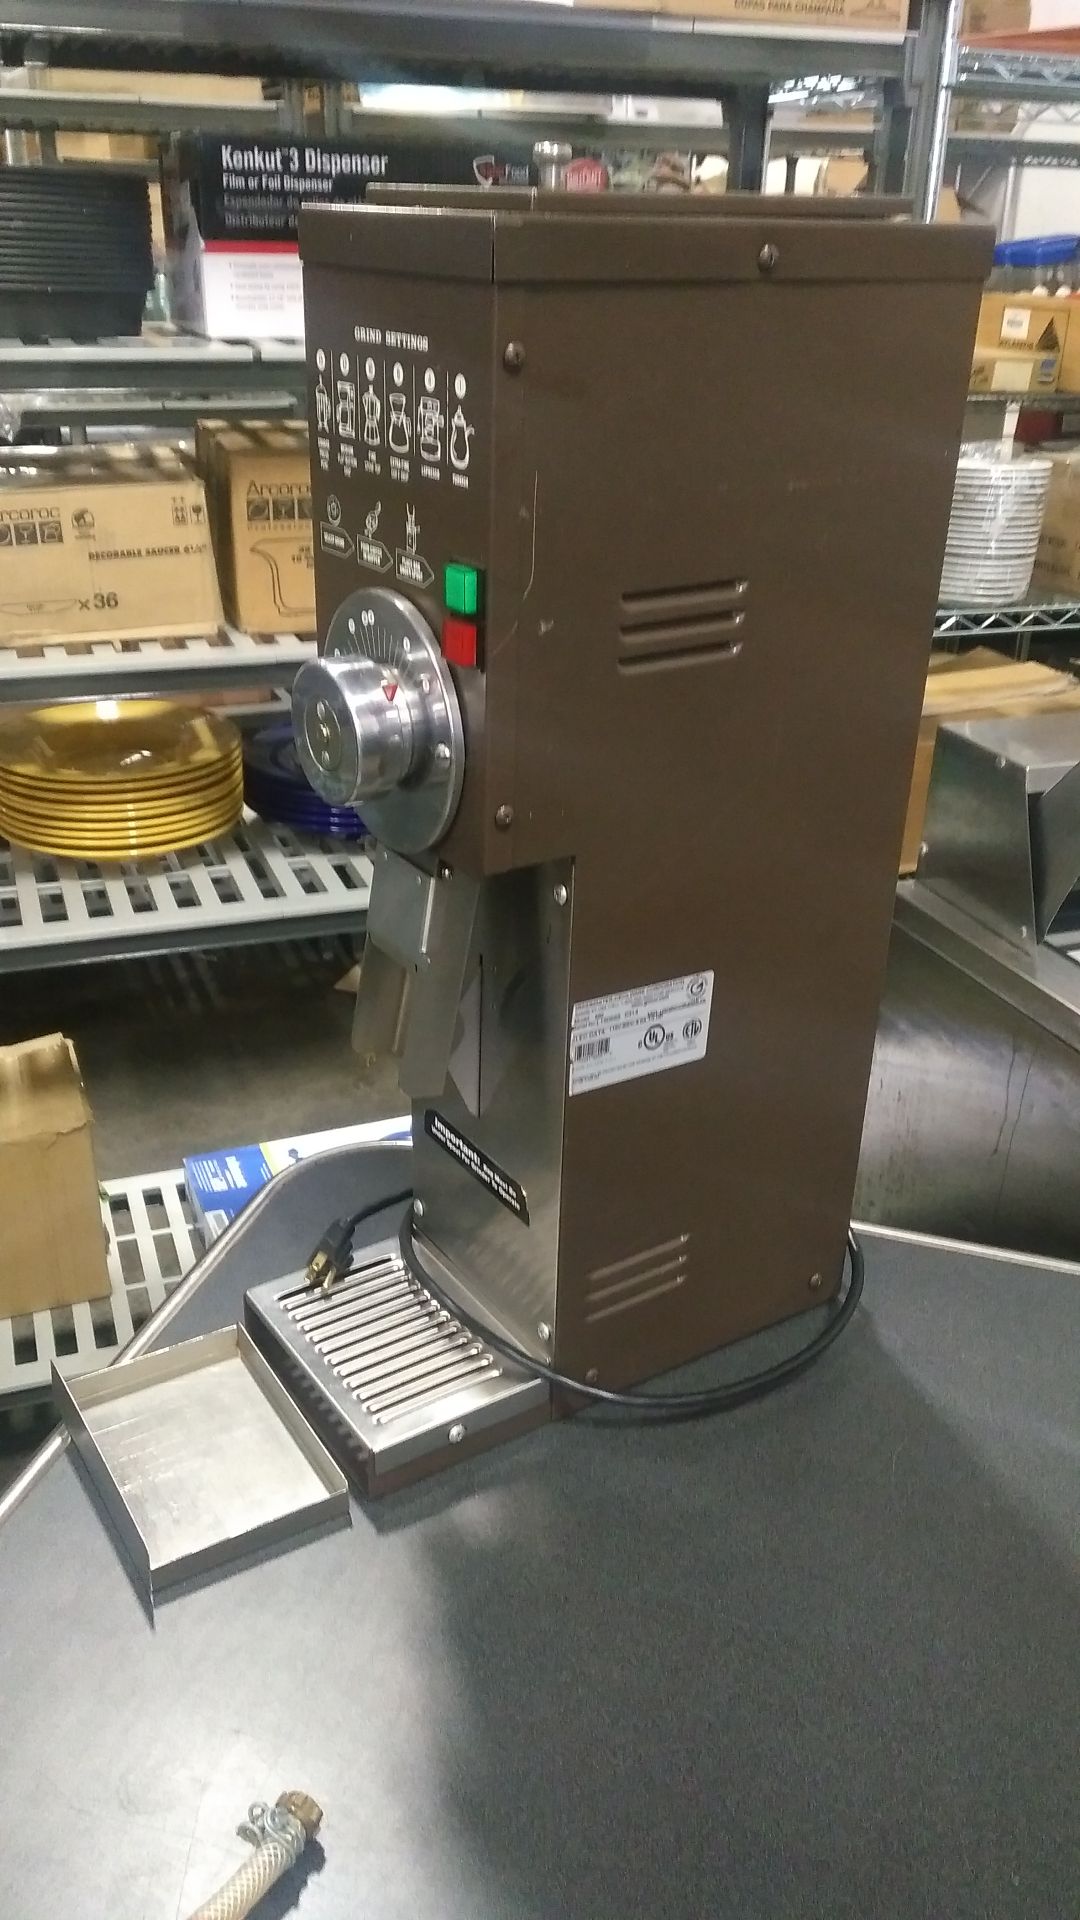 Grindmaster 890 5lb Coffee Grinder 120v, tested/working - Image 2 of 4